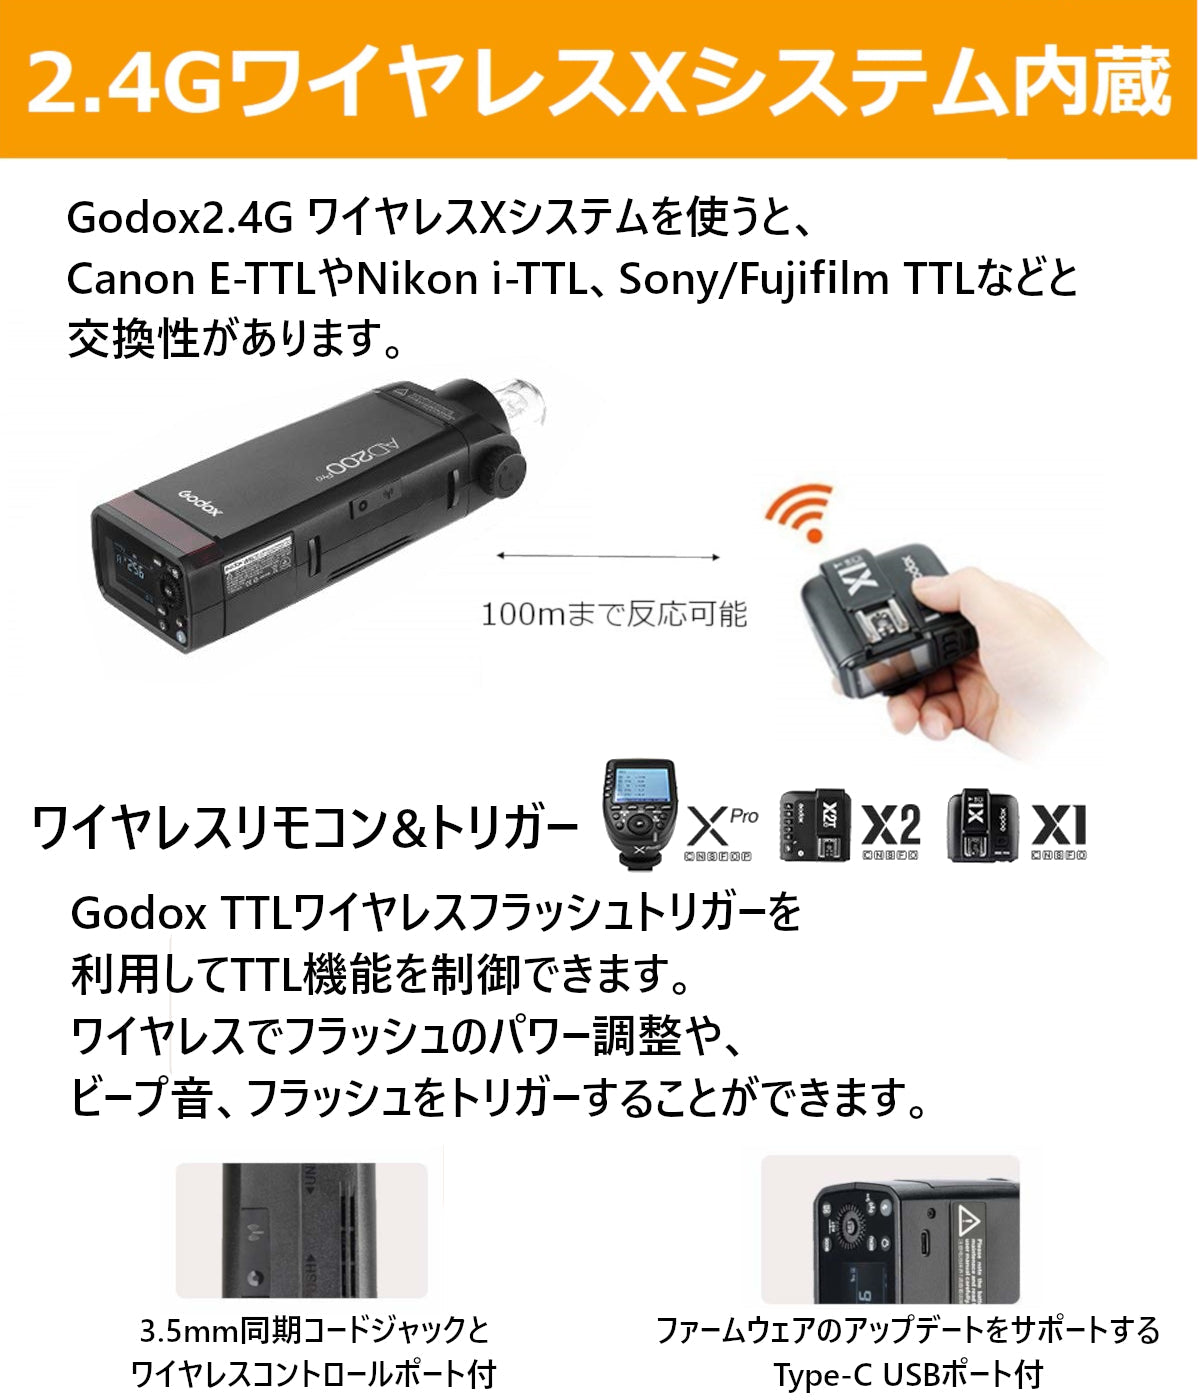 Godox AD200Pro ポケット TTL スピードライト フラッシュ [日本正規